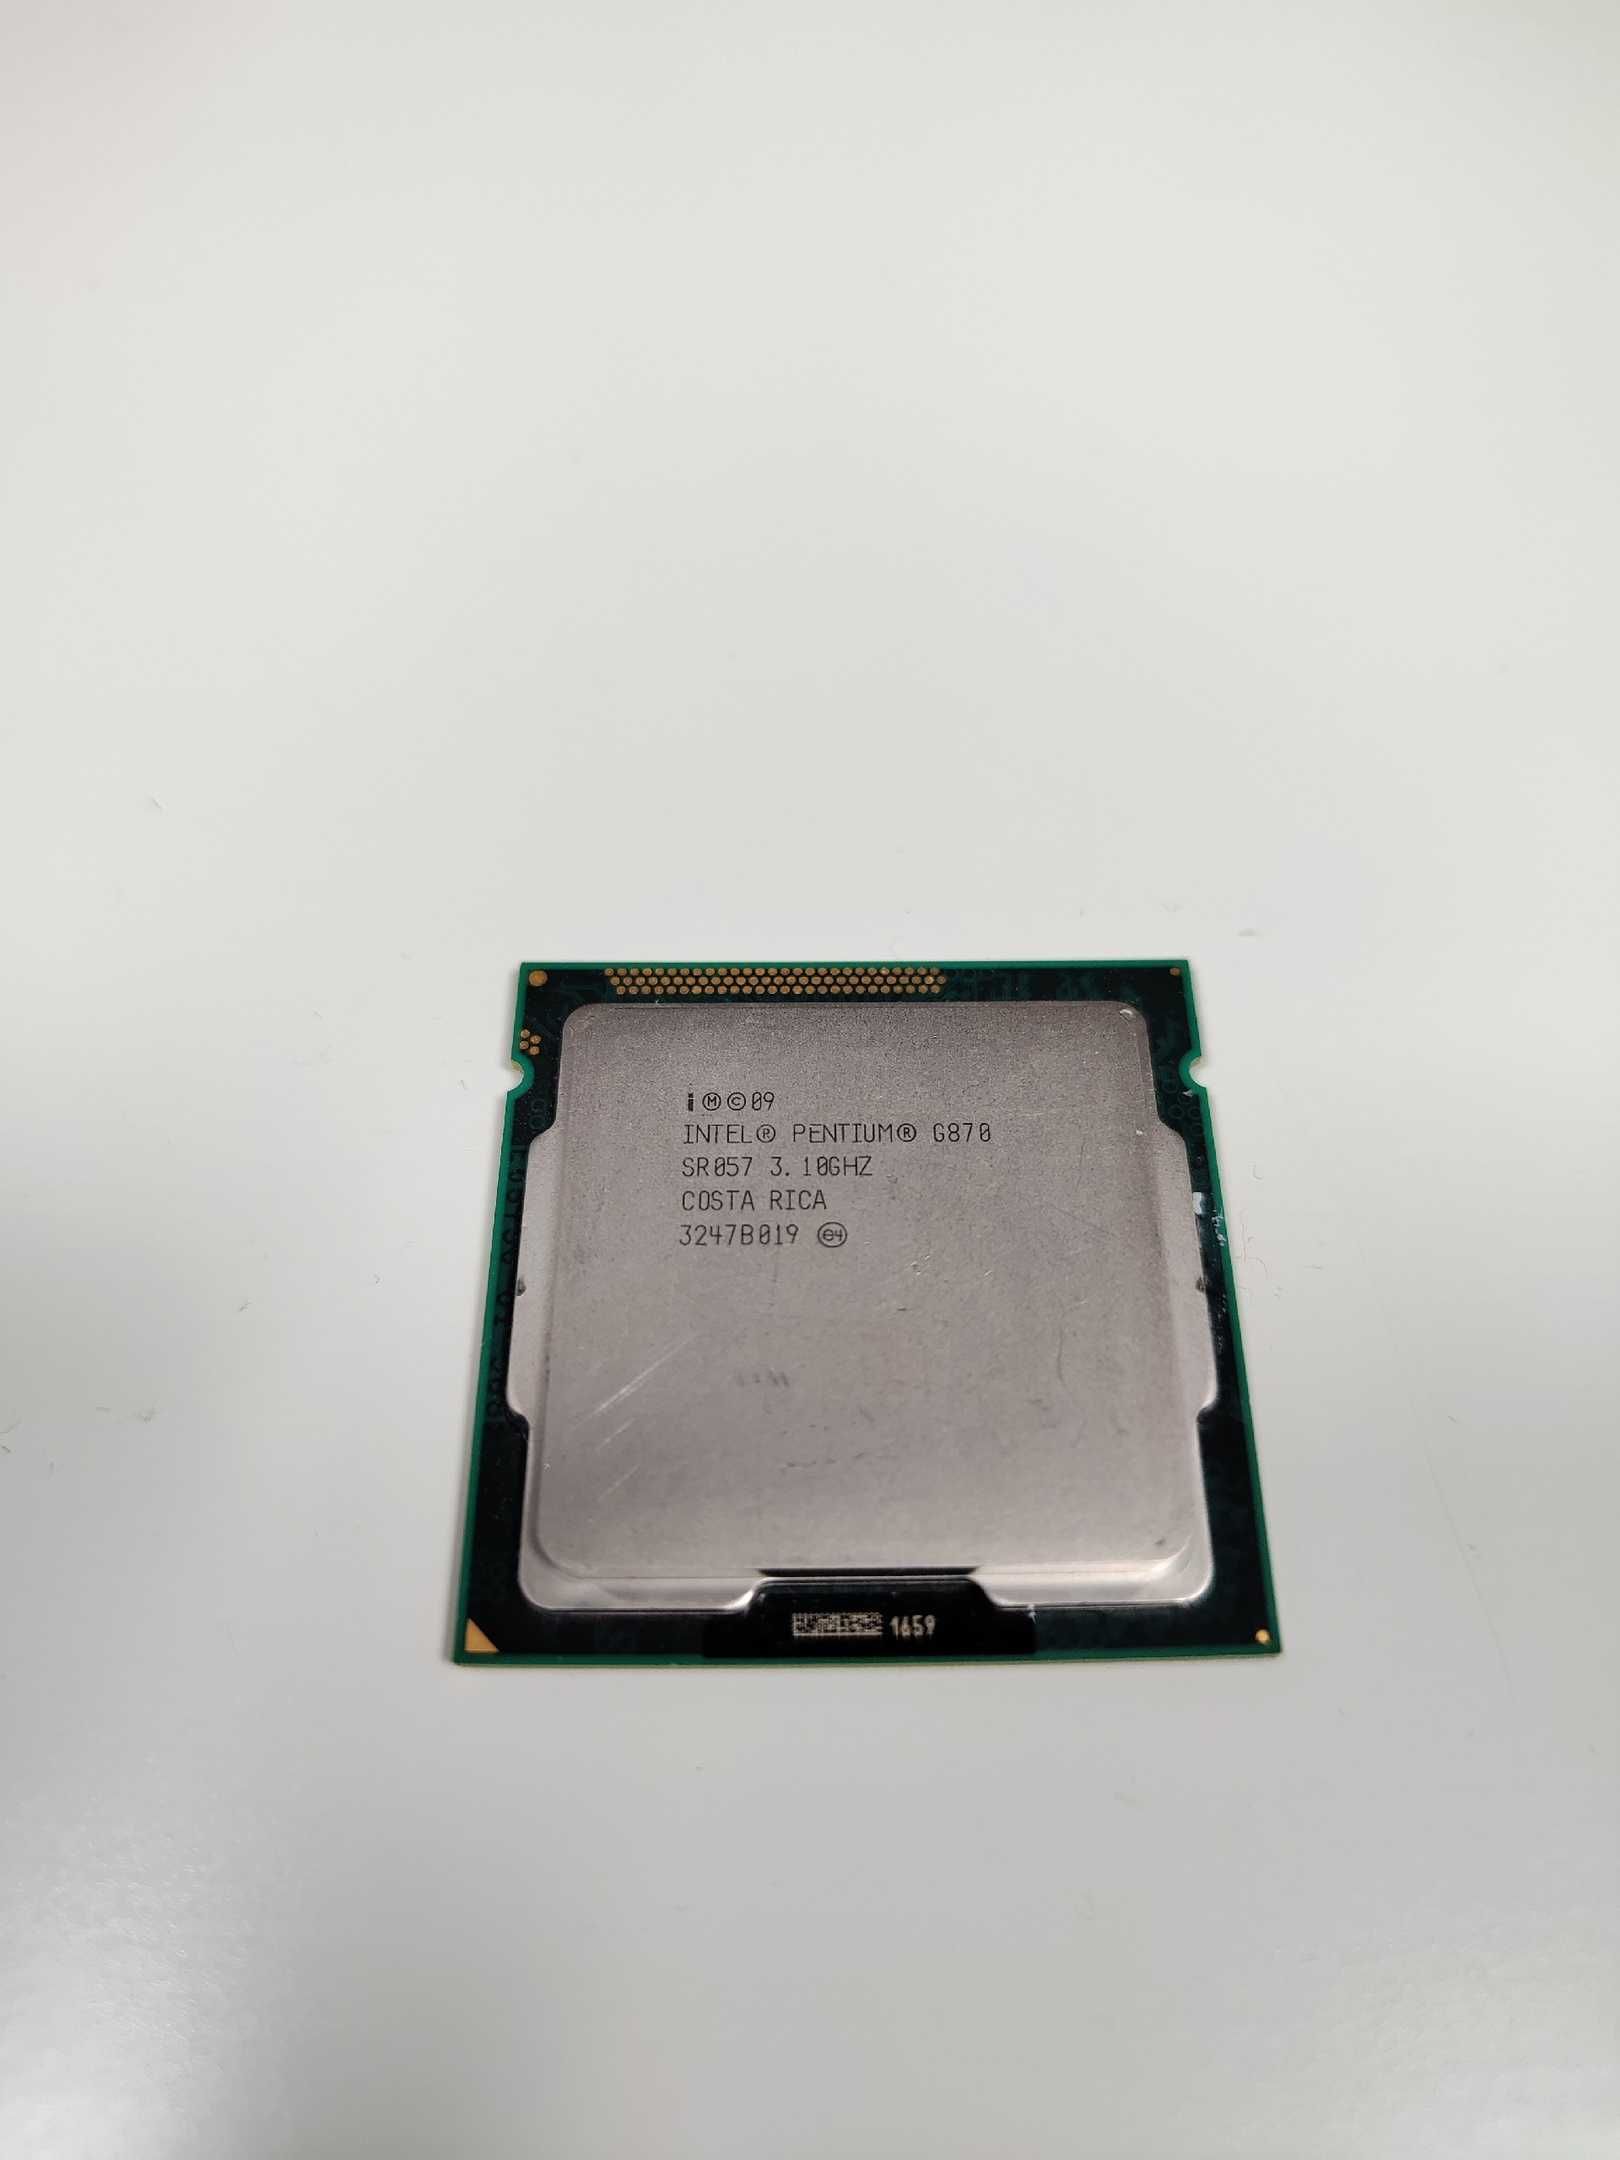 Procesor Intel Pentium G870